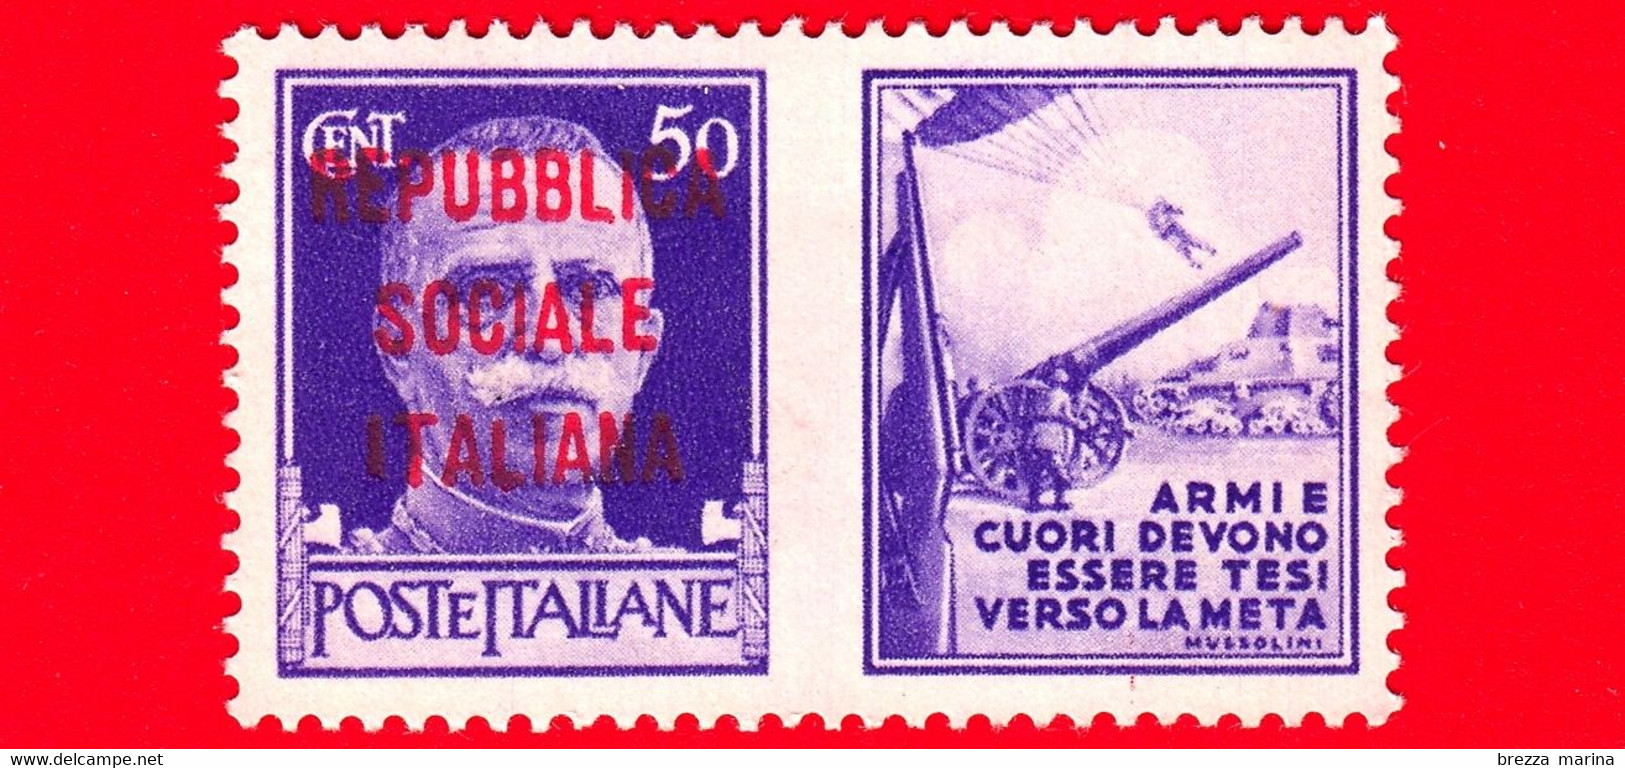 Nuovo - MNH - ITALIA - Rep. Sociale - 1944 - Imperiale - Propaganda Di Guerra - Armi E Cuori Devono Essere Tesi Ver - 50 - Propaganda Di Guerra